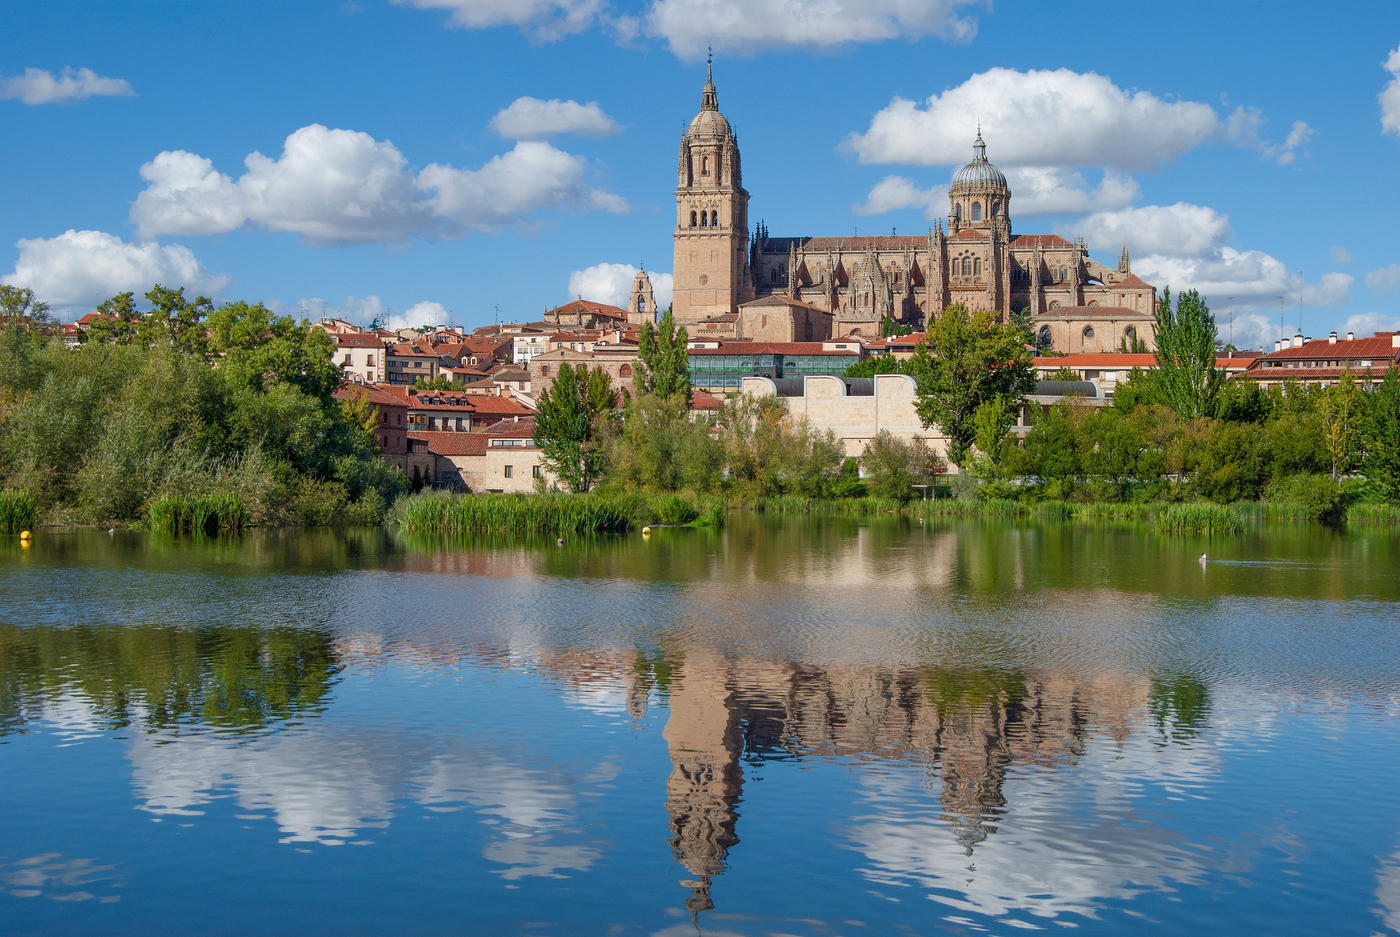 Salamanca: A Jewel of Spain